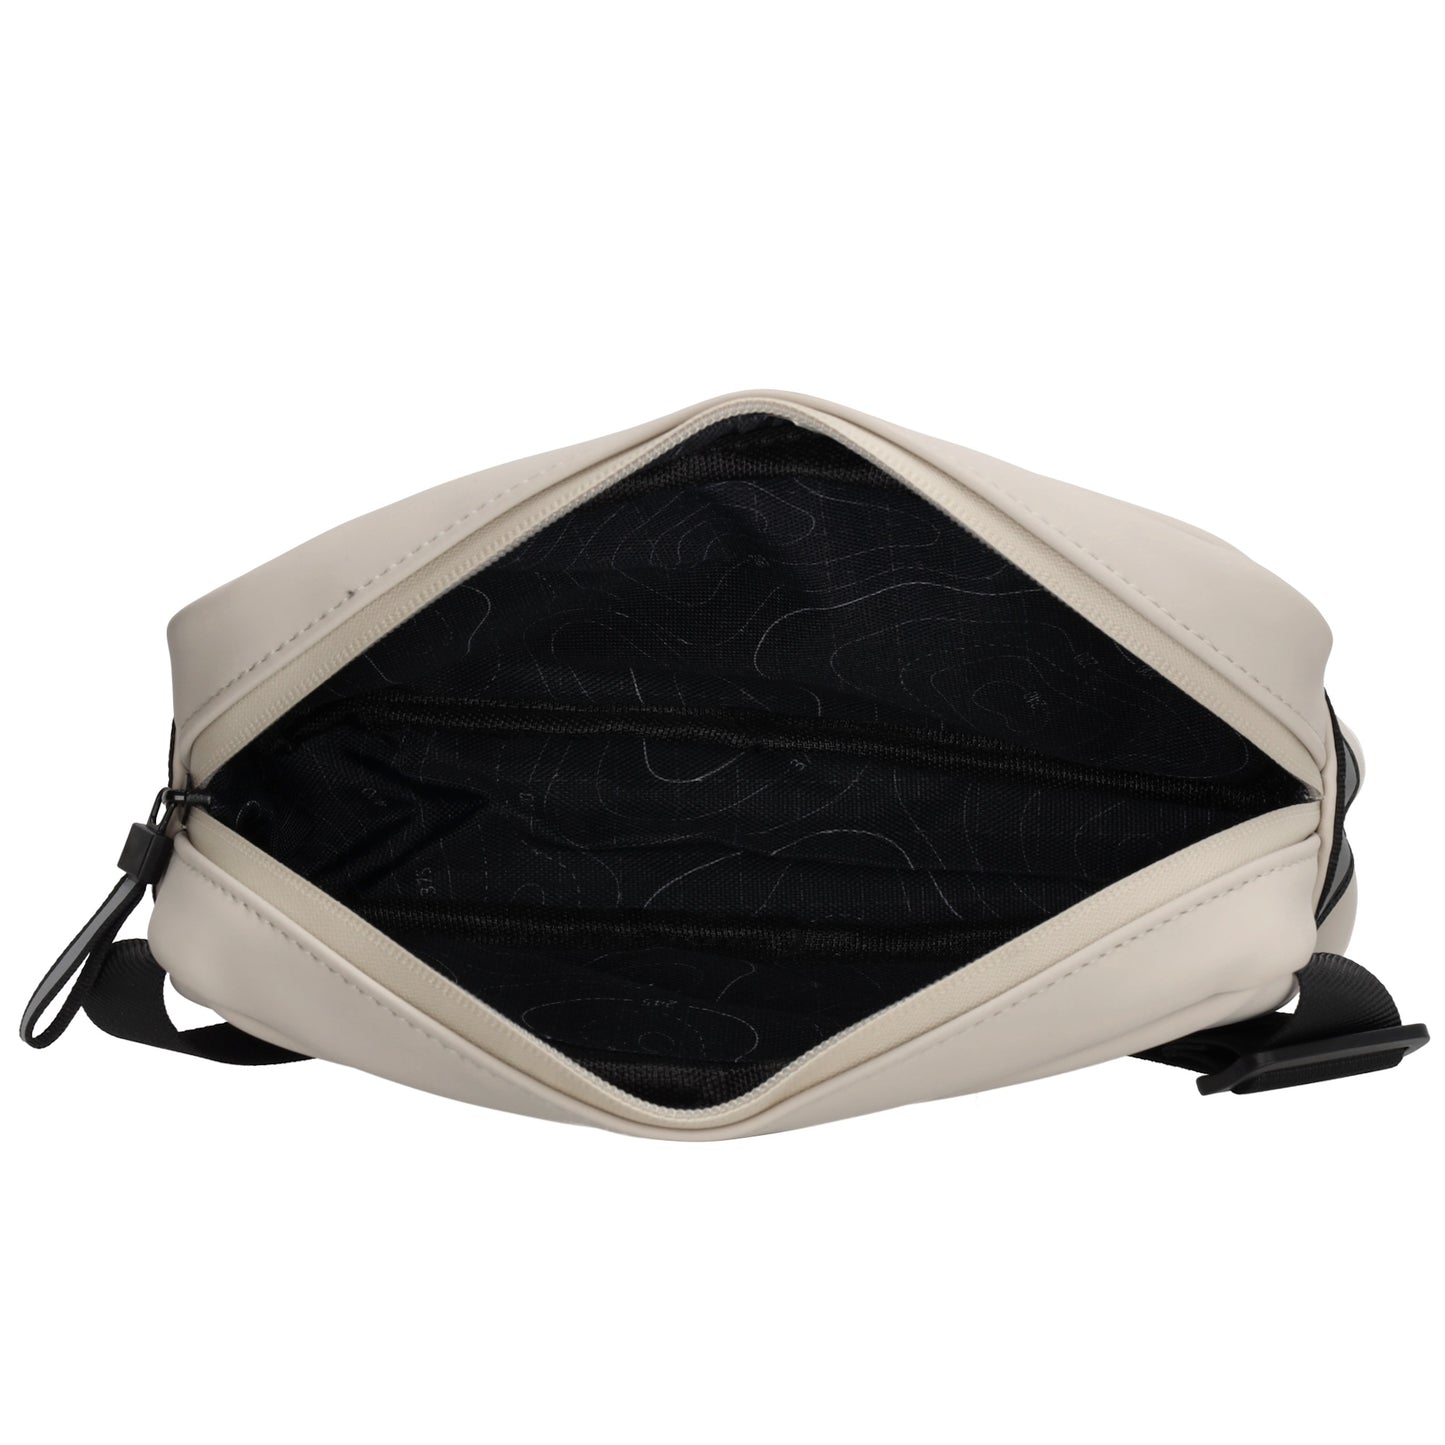 Bodybag|Gürteltasche 21 x 12,5cm in Helltaupe aus wasserabweisendem Material